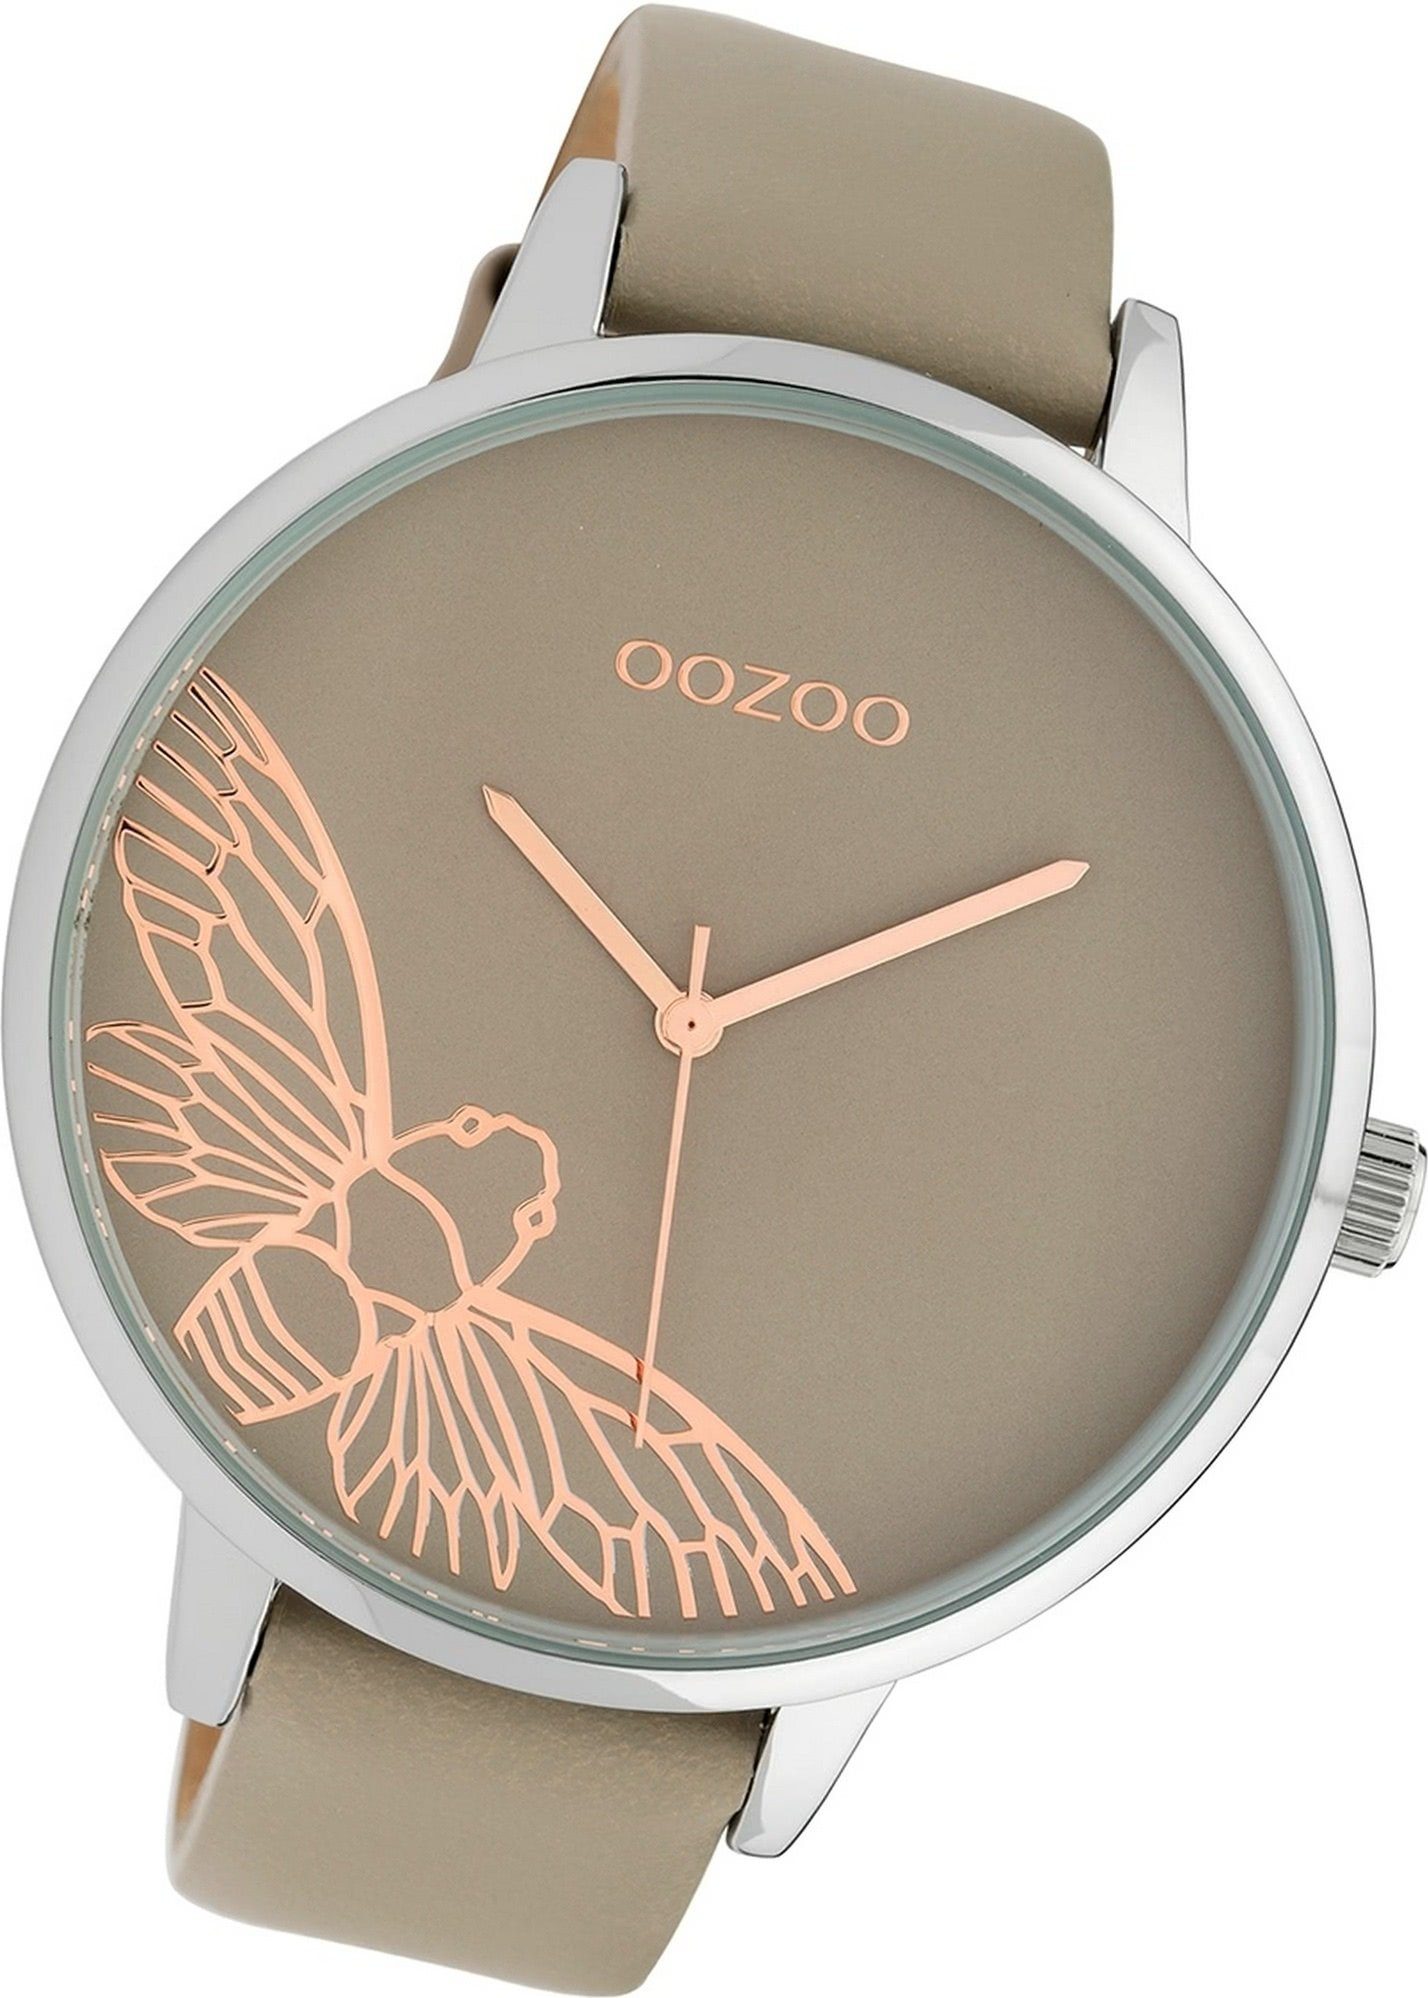 OOZOO Quarzuhr Oozoo Leder Damen Uhr C10077 Analog, (Analoguhr), Damenuhr  Lederarmband braun, beige, rundes Gehäuse,extragroß (ca 48mm)